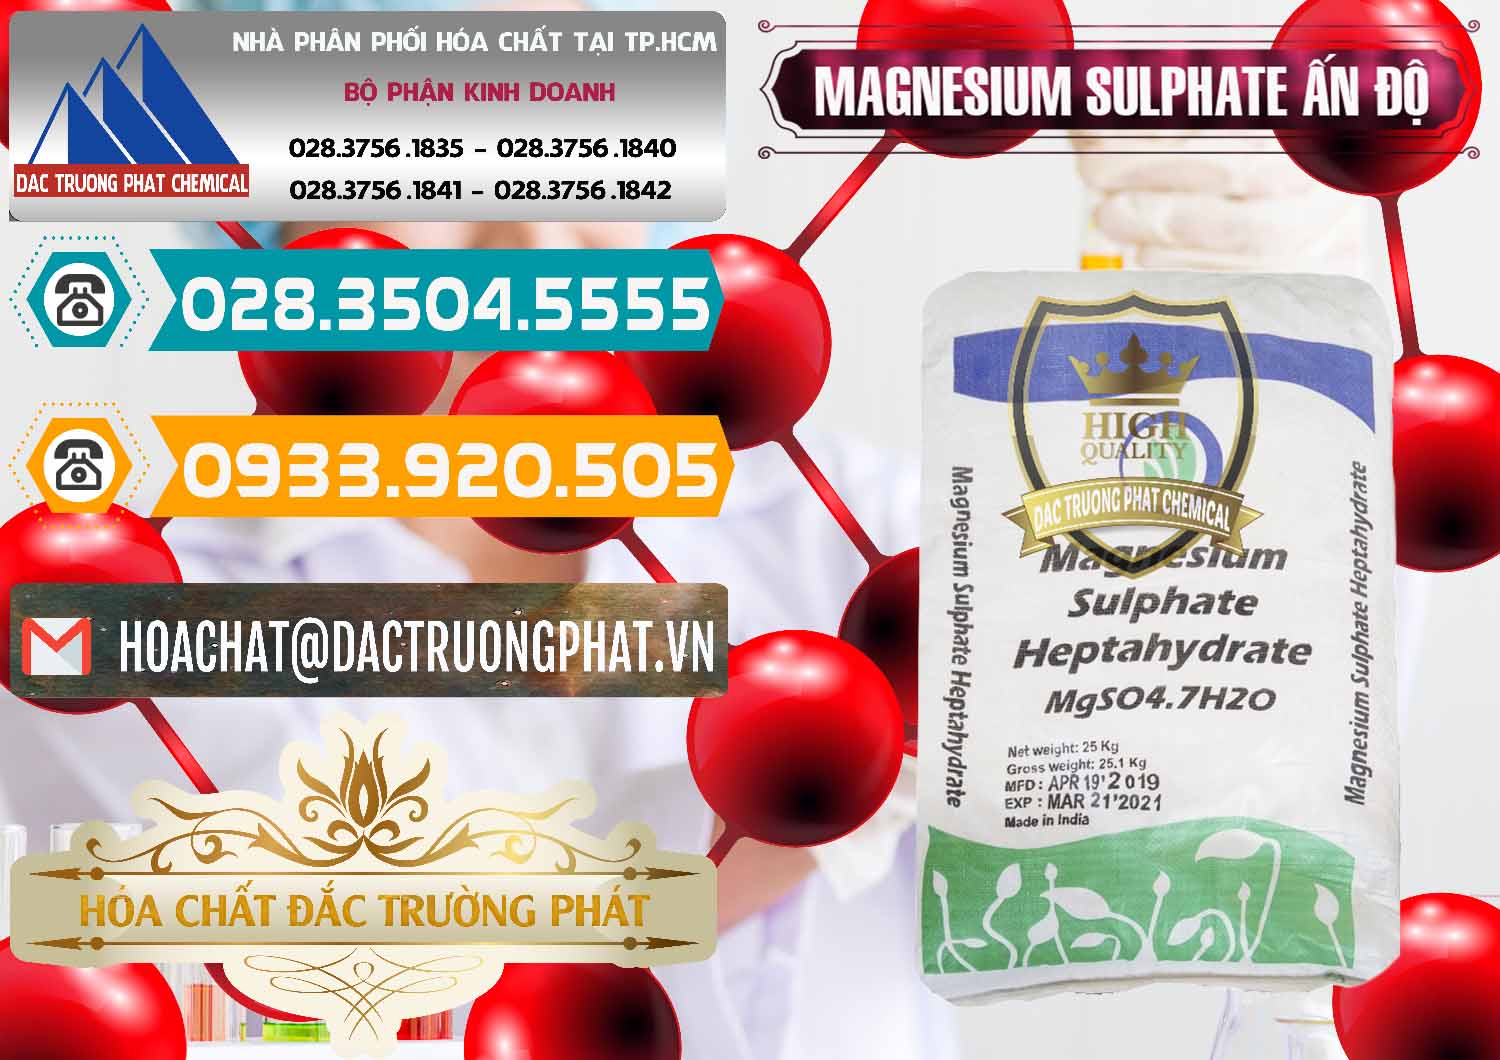 Đơn vị chuyên phân phối _ bán MGSO4.7H2O – Magnesium Sulphate Heptahydrate Ấn Độ India - 0362 - Công ty cung cấp & phân phối hóa chất tại TP.HCM - congtyhoachat.vn